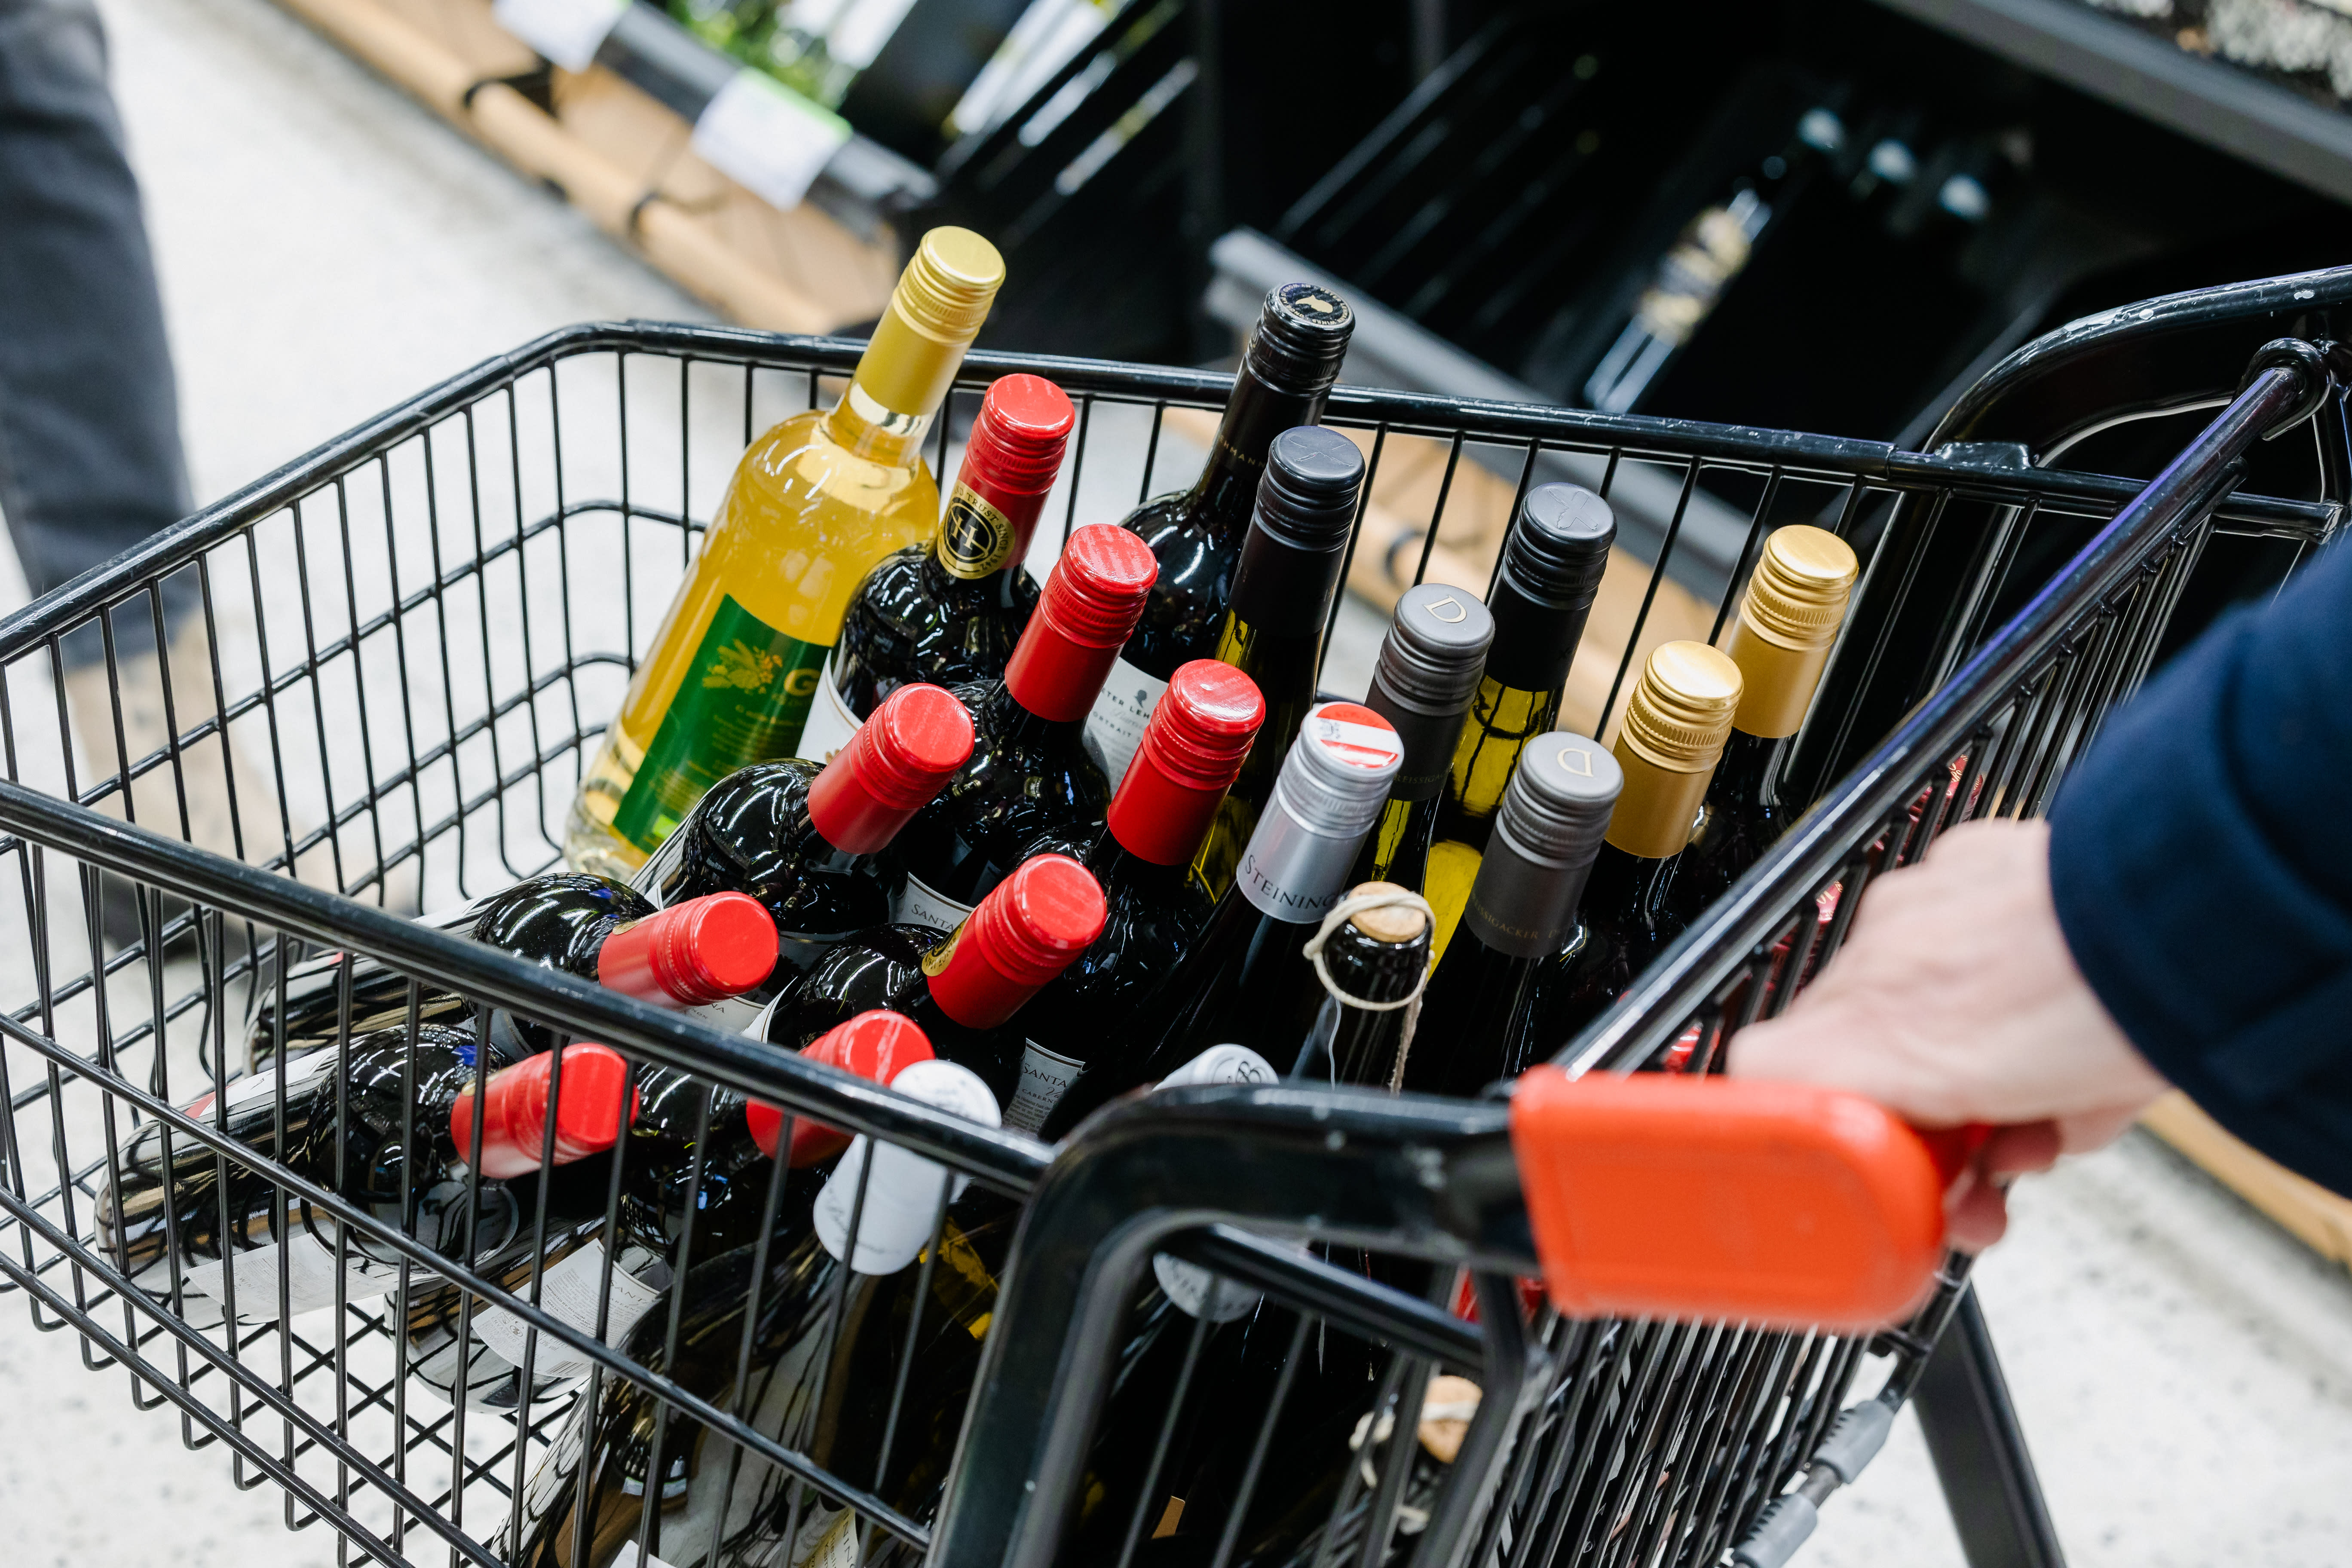 Die Mehrheit der finnischen Abgeordneten unterstützt die Tatsache, dass Lebensmittelgeschäfte Wein verkaufen dürfen